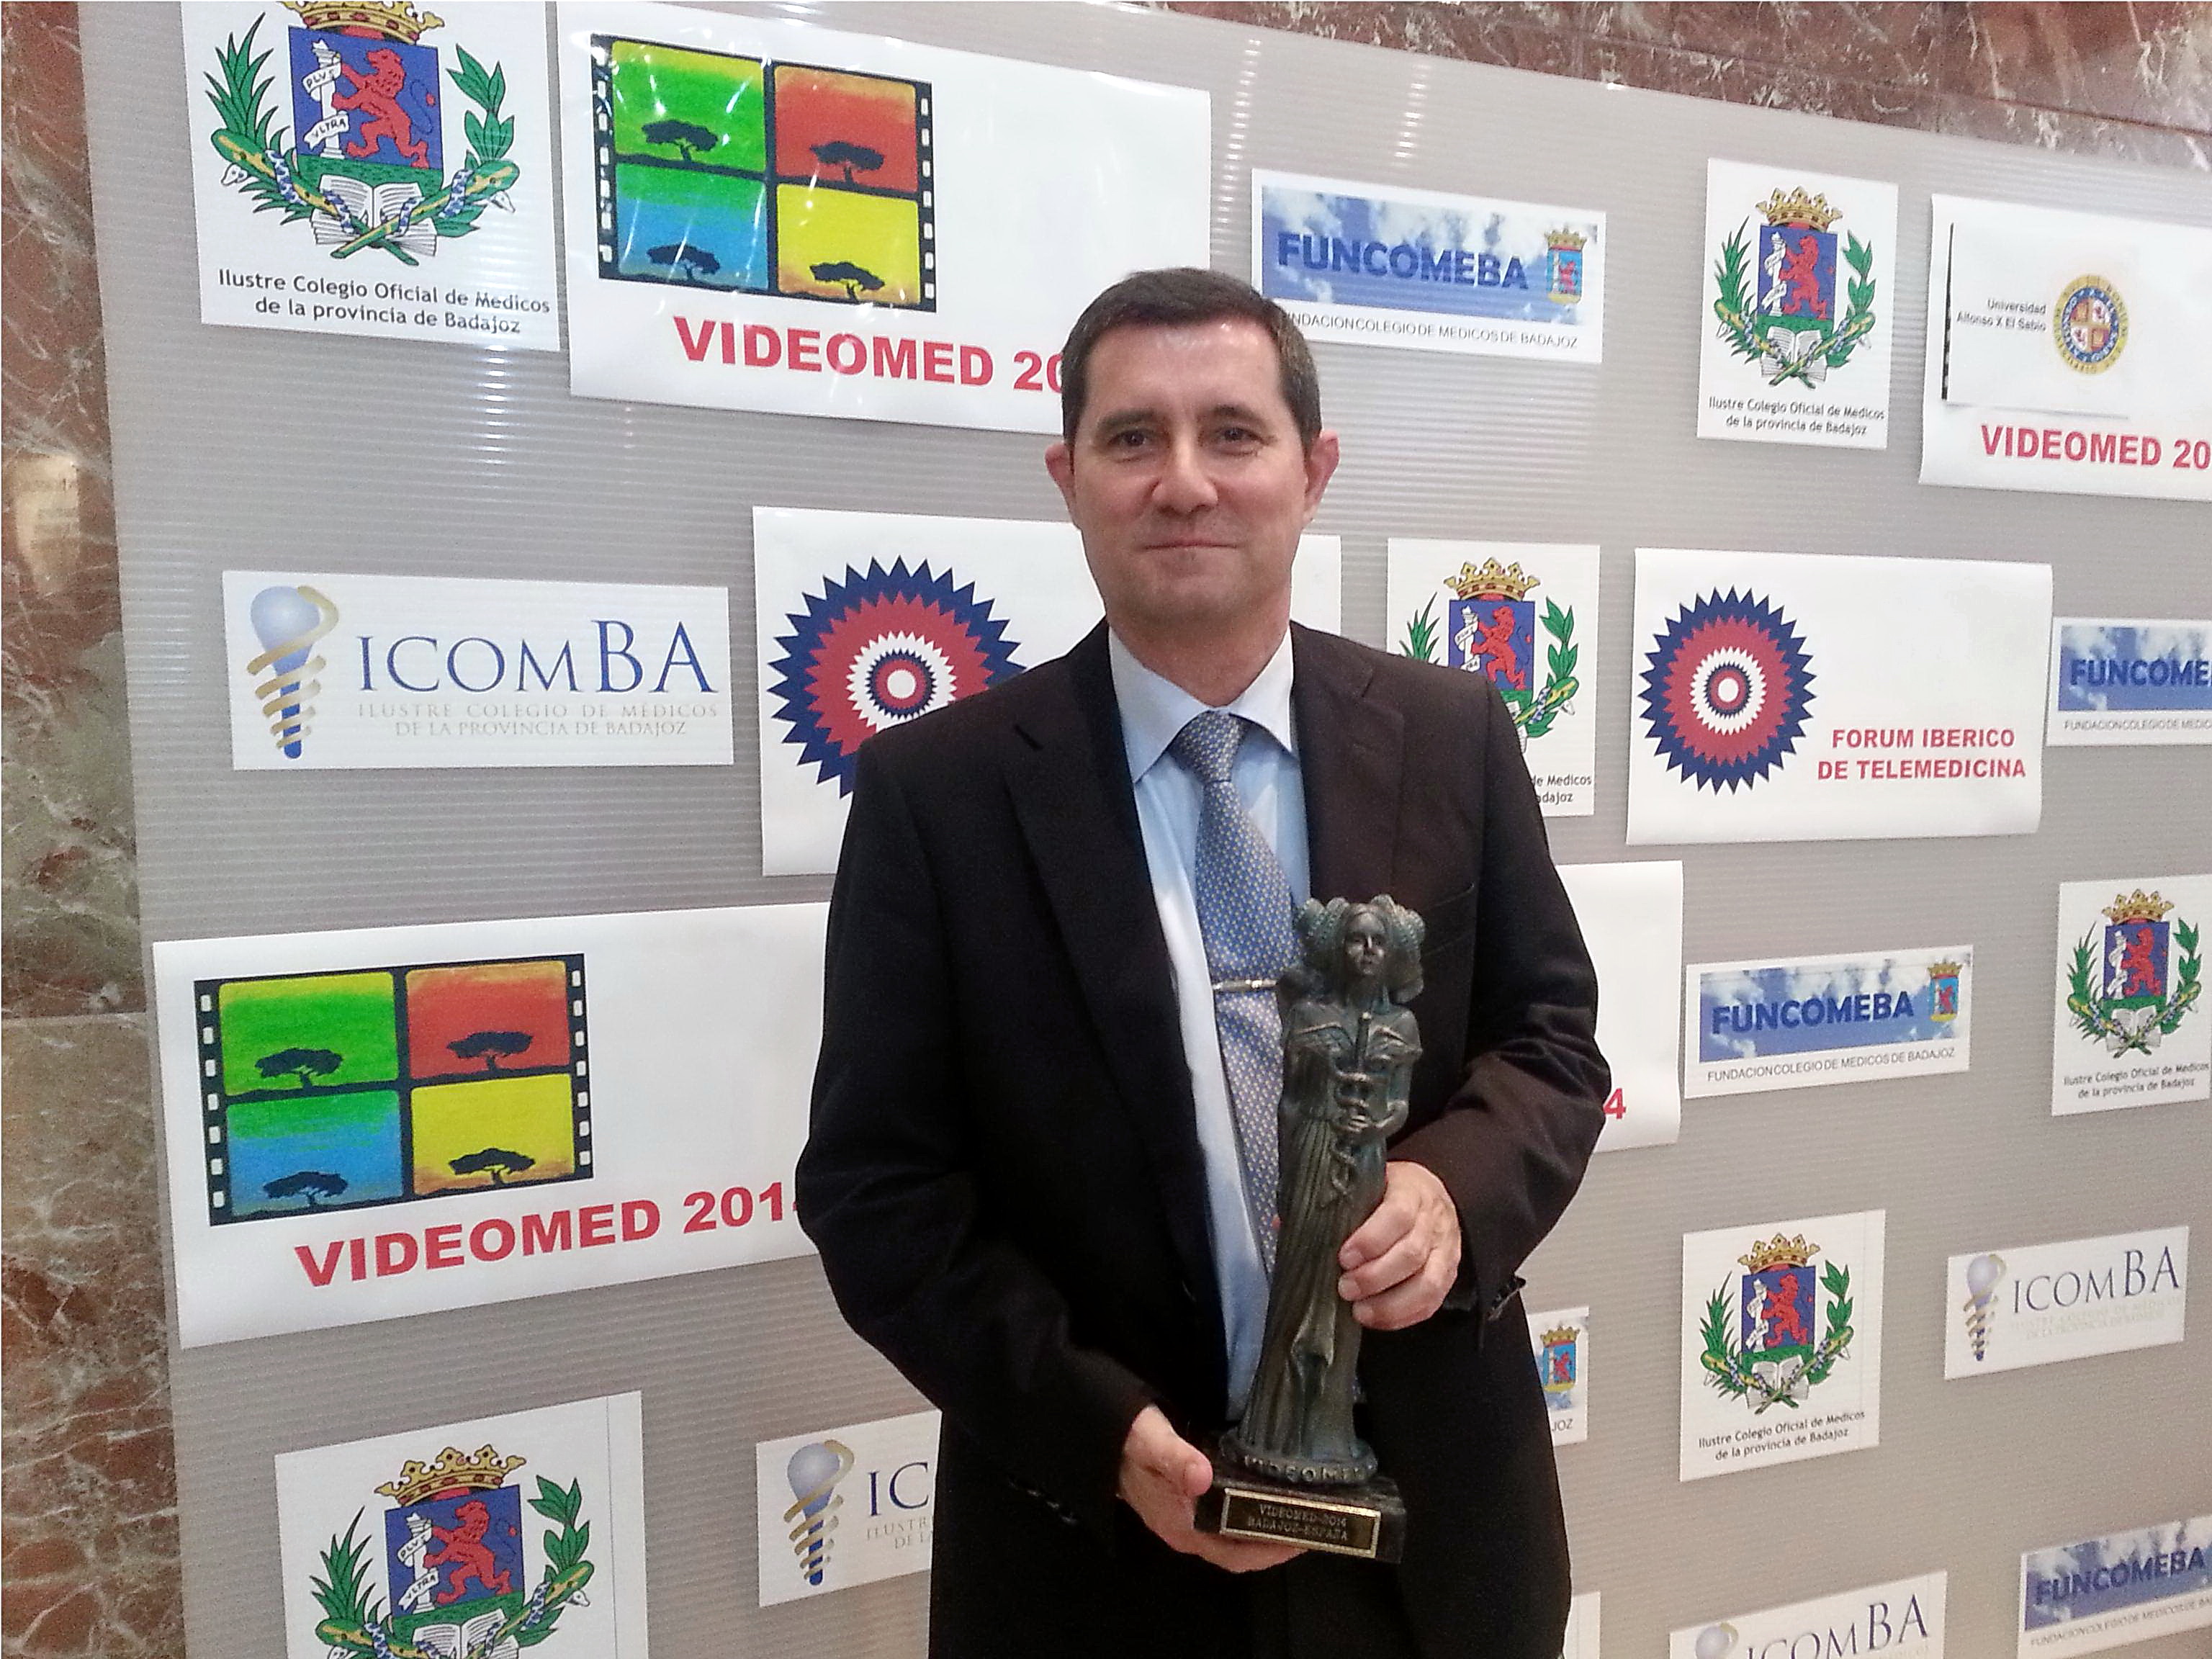 La Universidad de Salamanca recibe el Premio Videomed 2014 en el XIX Certamen Internacional de Cine Médico.